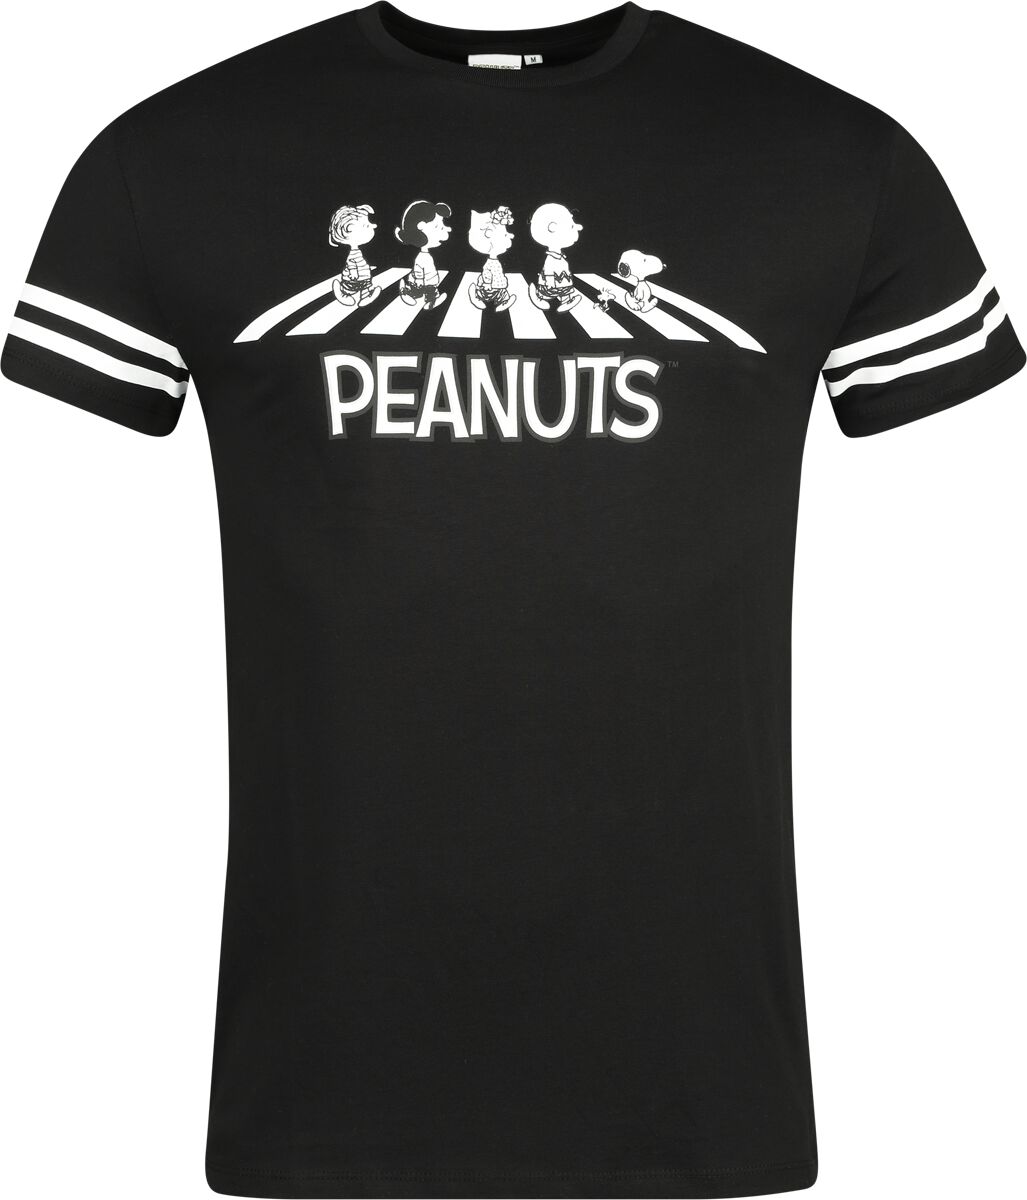 Peanuts T-Shirt - Walking Group - S bis 3XL - für Männer - Größe 3XL - multicolor  - EMP exklusives Merchandise!